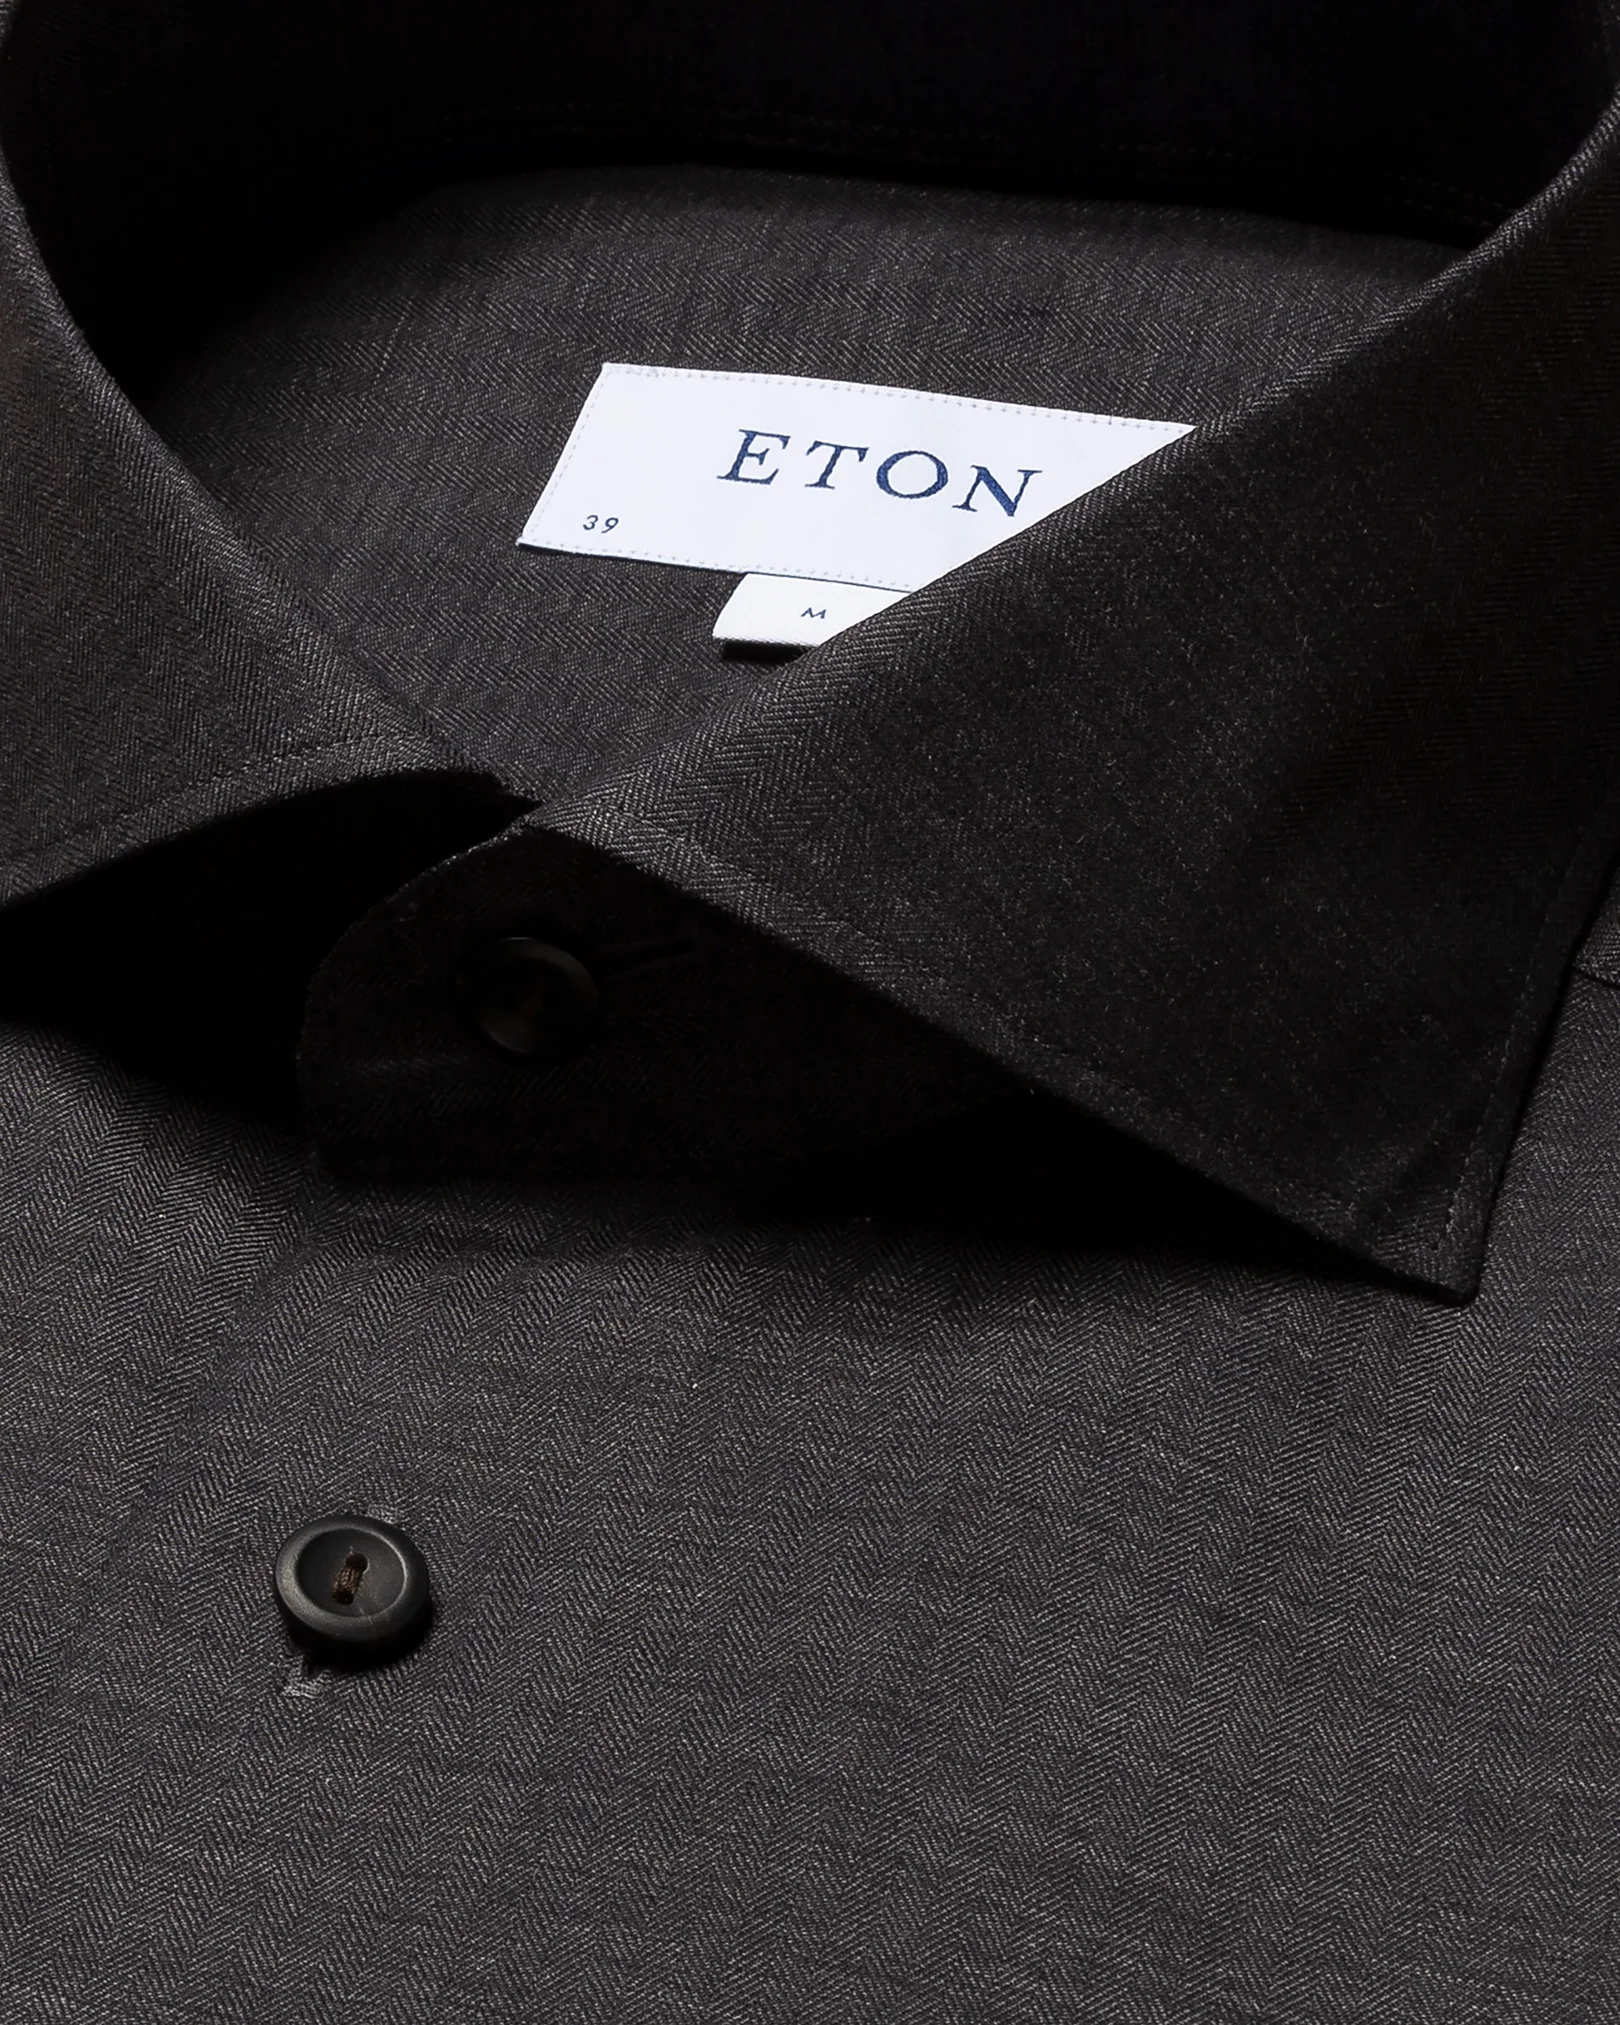 Eton - black flannel widespread